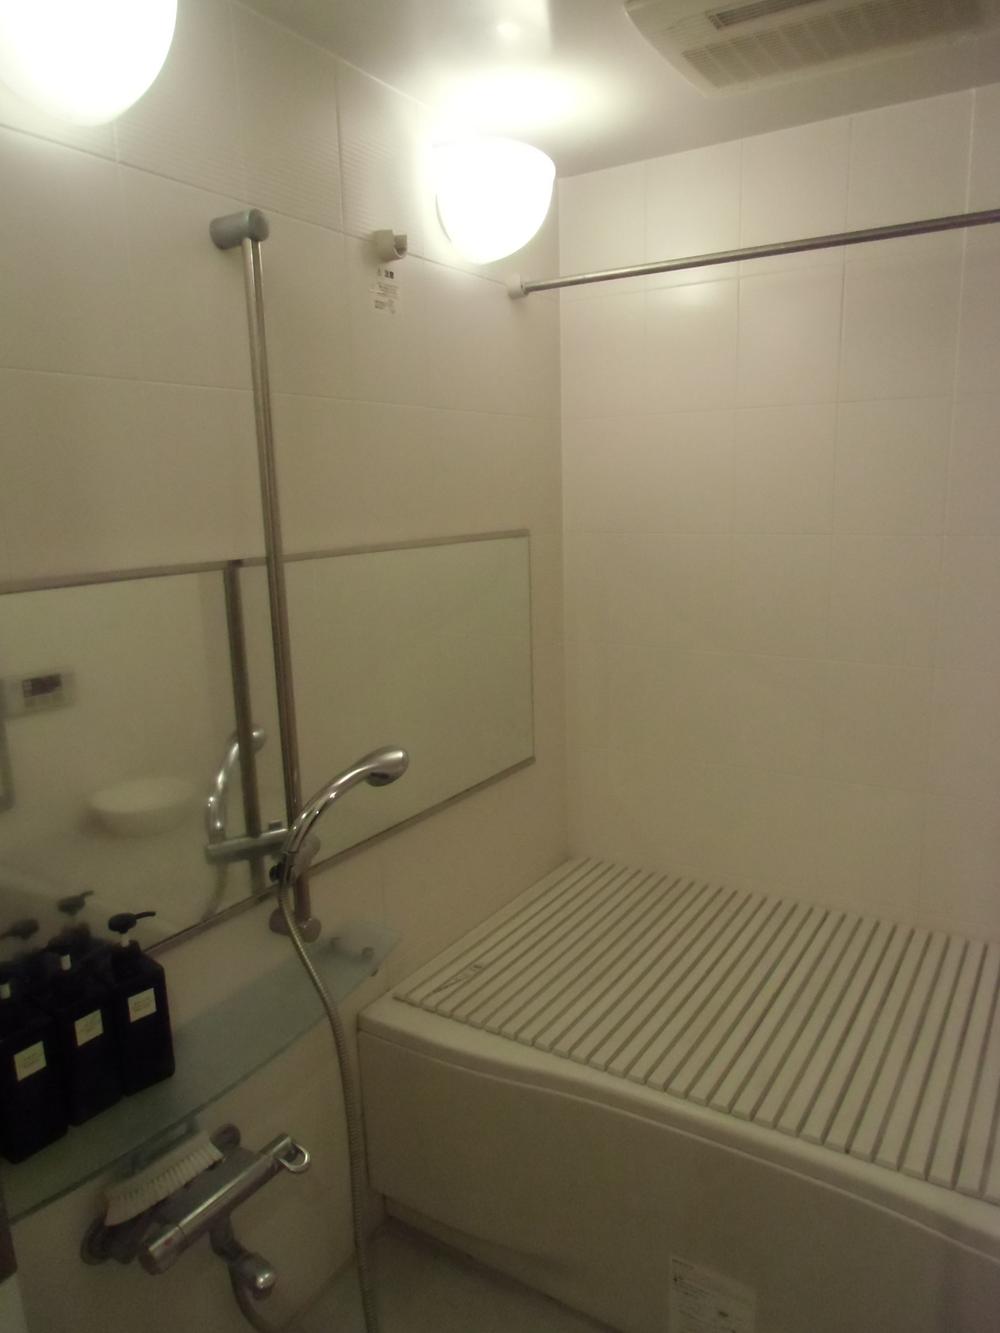 Bathroom. Bathroom dryer with unit bus